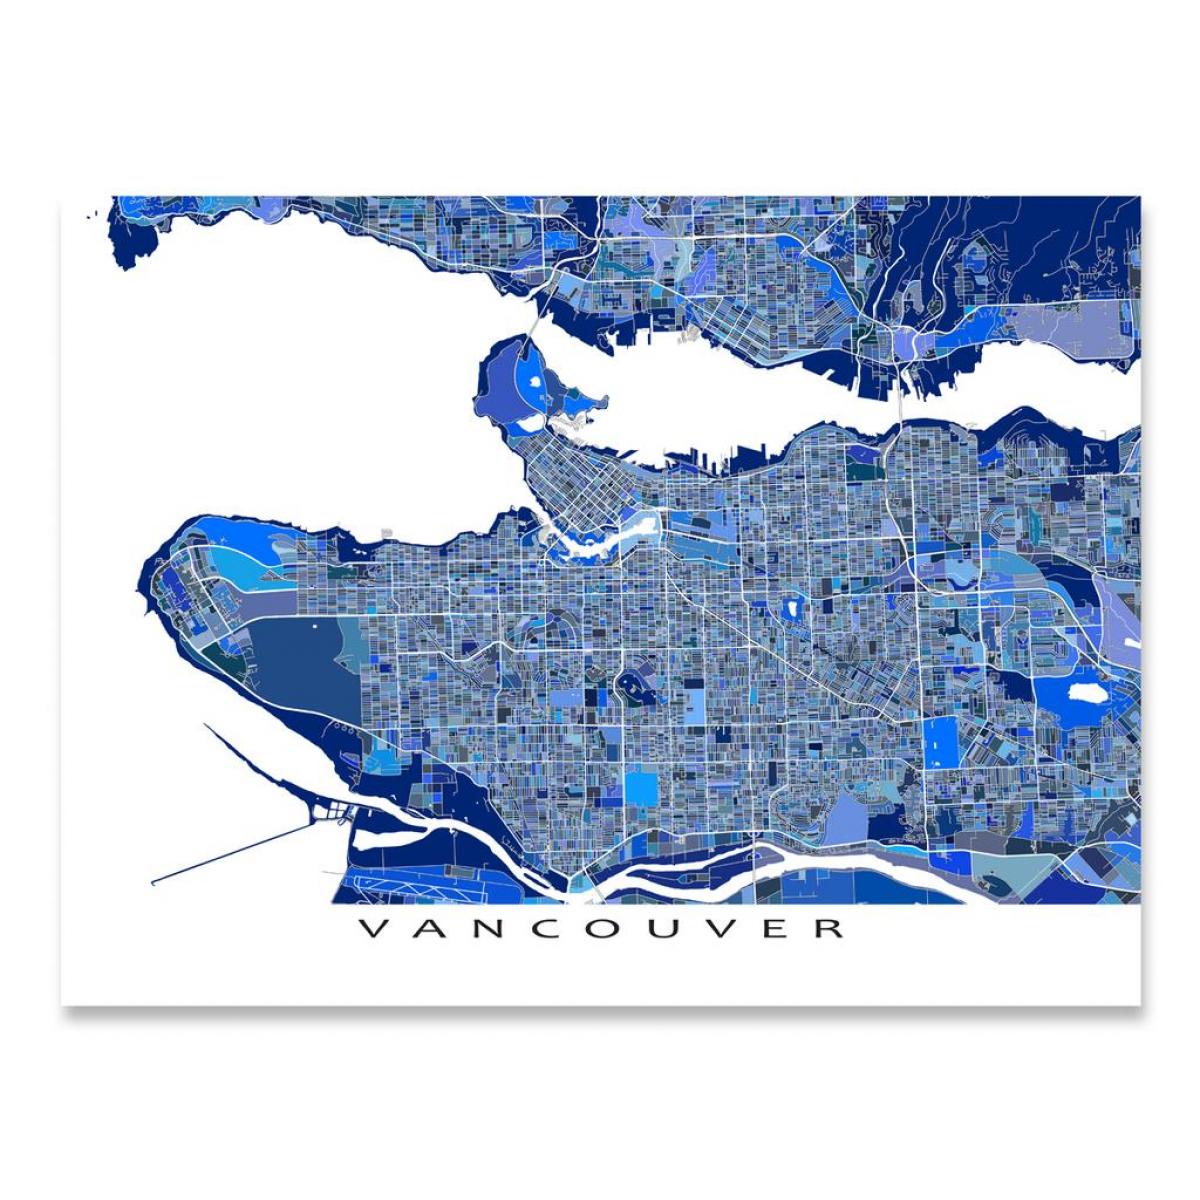 Peta dari vancouver art